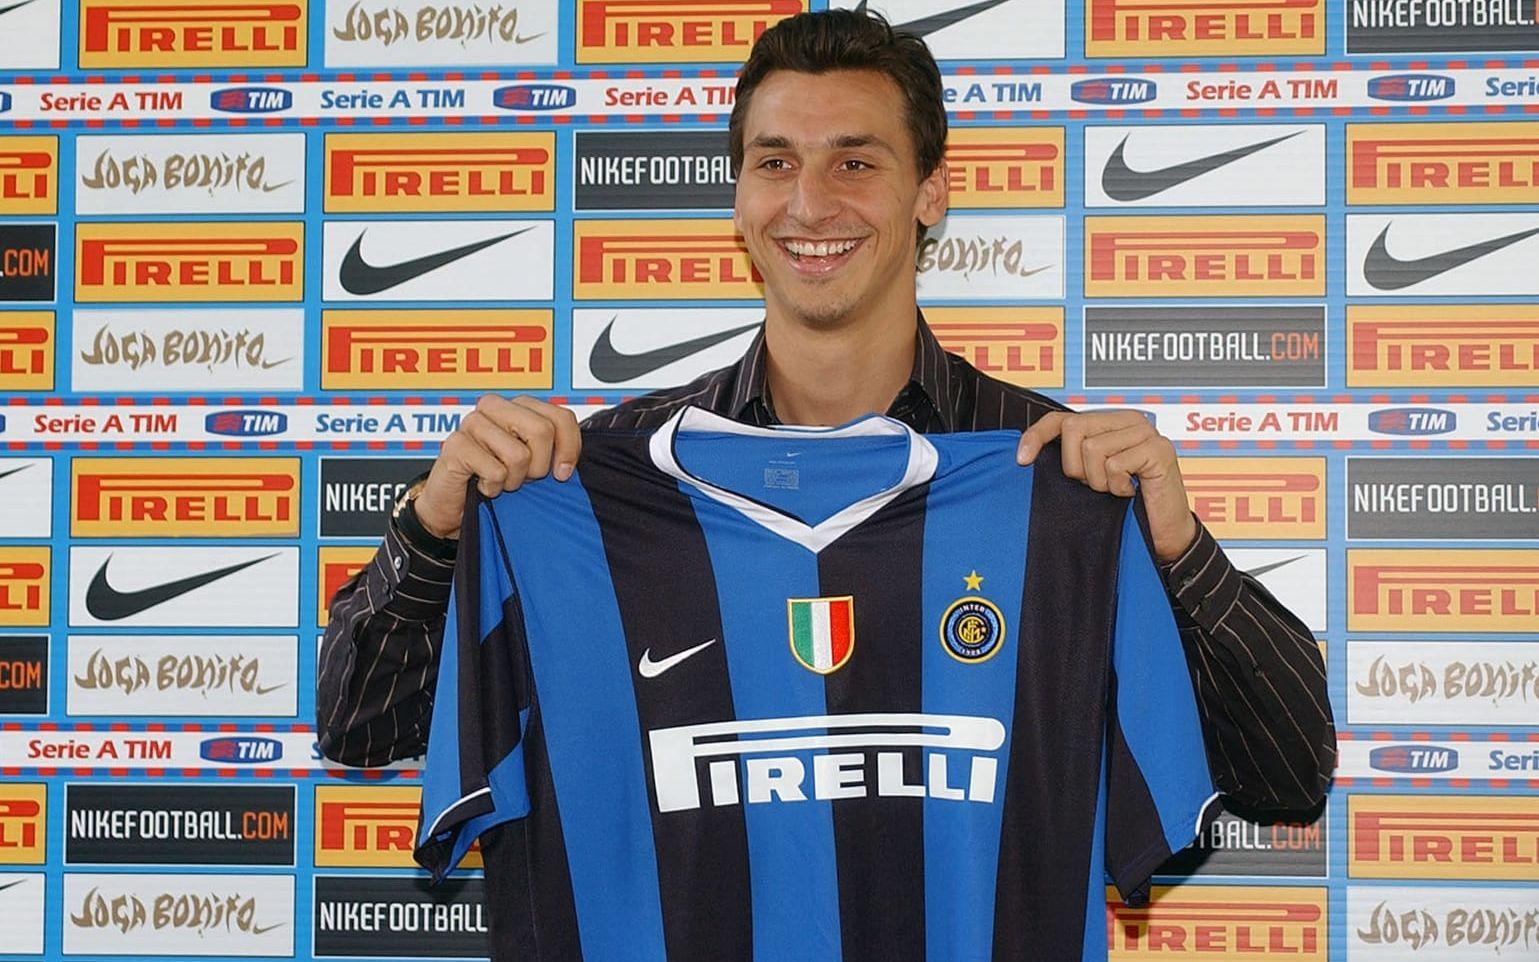 Men efter att Juventus degraderades till Serie B efter en mutskandal gick han över till Inter. Bild: Bildbyrån